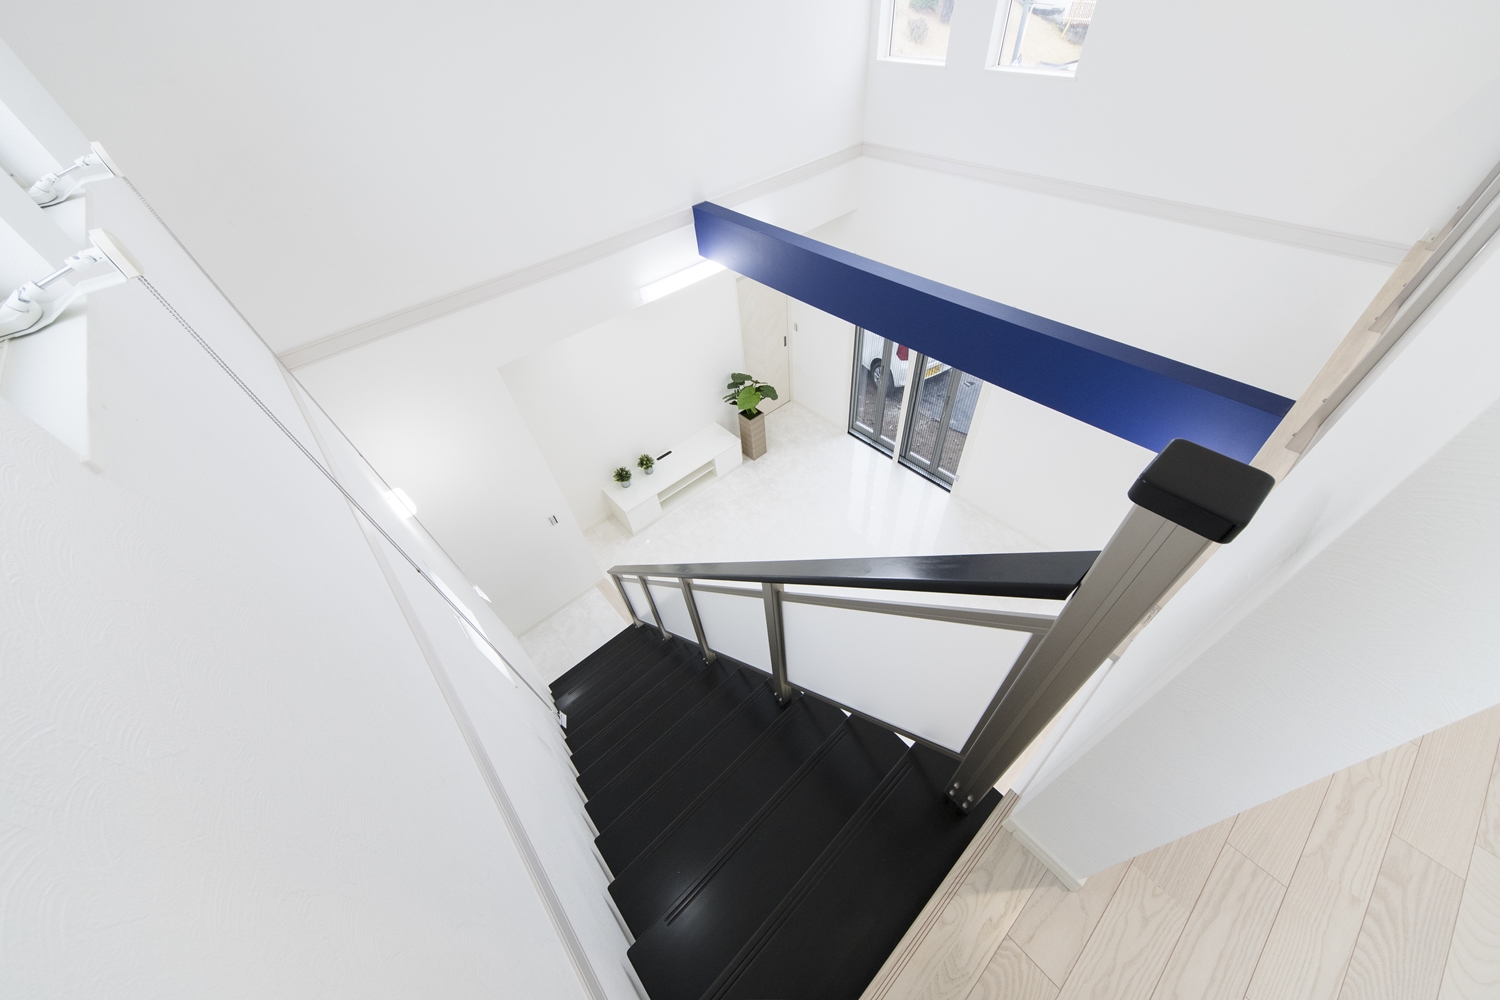 光や風を遮らず階下と階上を軽やかにつなぎ、快適な空間を演出するオープンスタイルの階段。